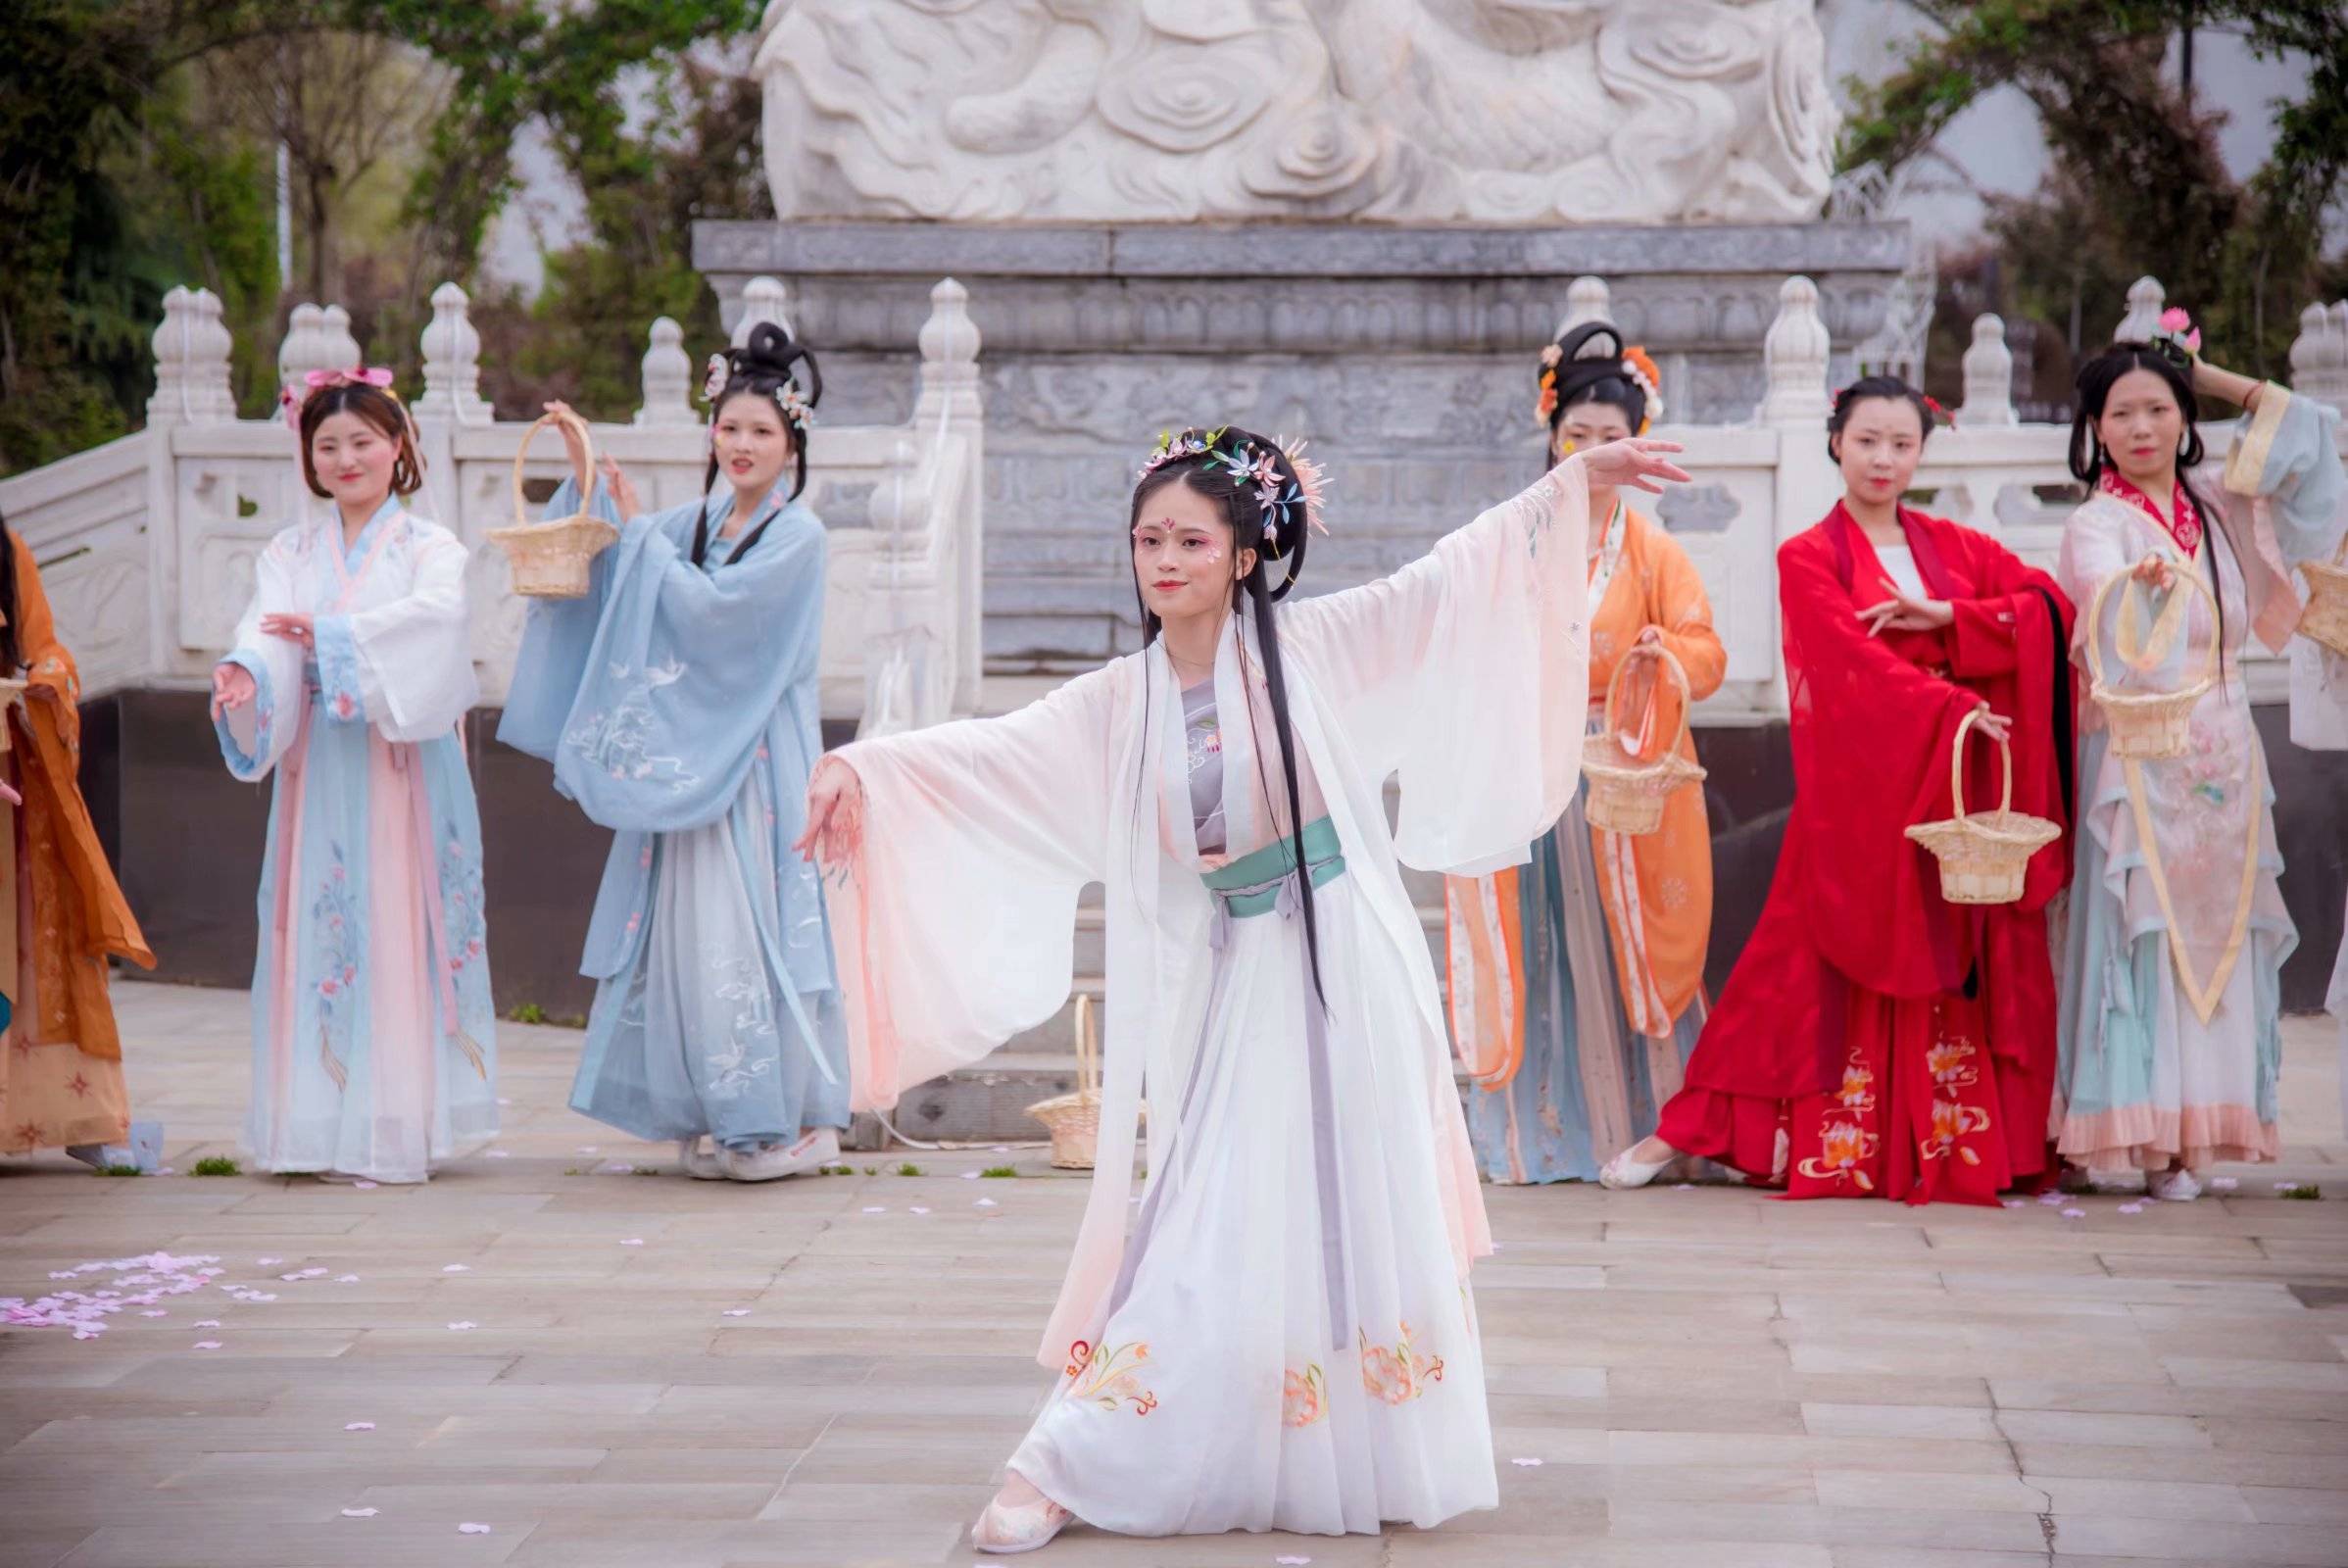 卧龙汉服将于3月27日举办花朝节弘扬传统文化